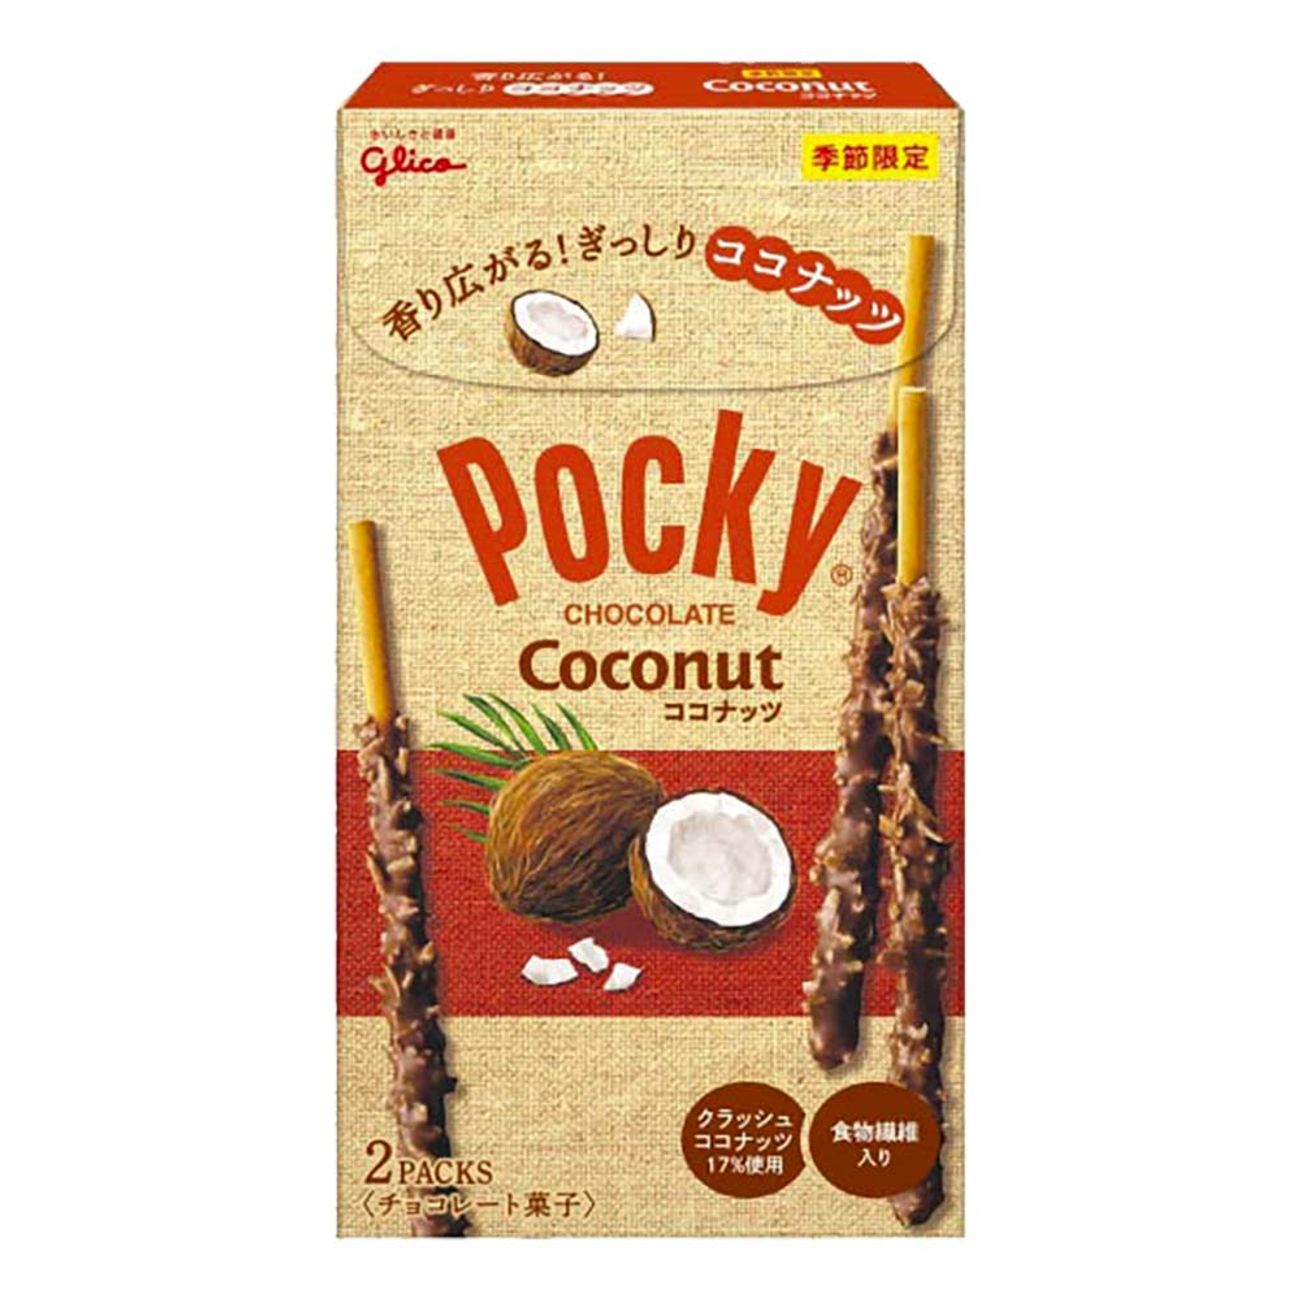 pocky-chocolate-coconut-92436-1